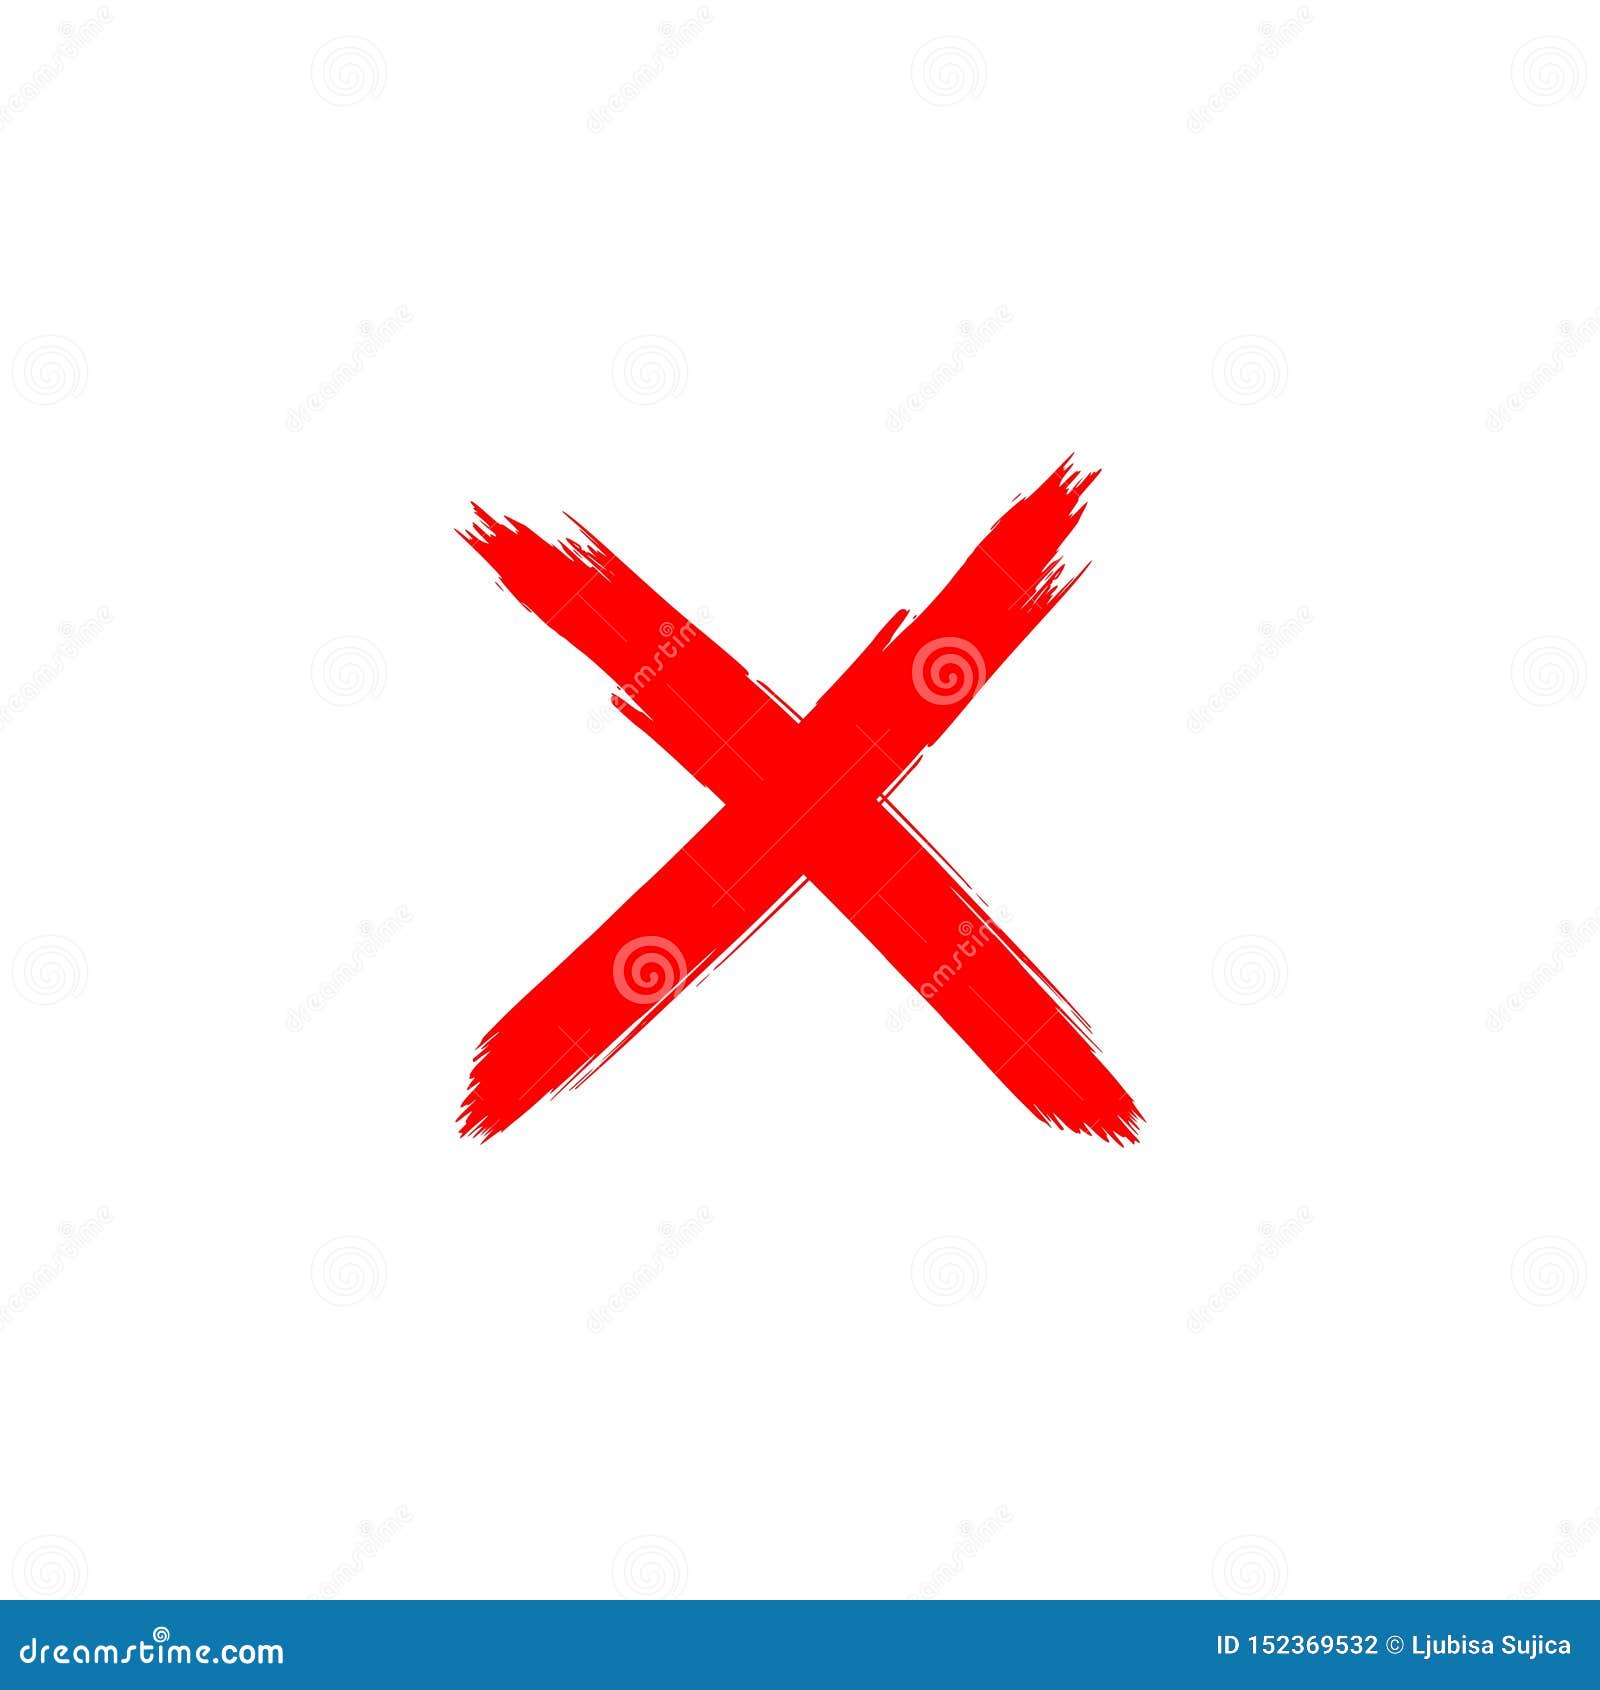 Chữ X nổi bật trong logo Chữ Thập Đỏ là biểu tượng của sự thông qua và hy vọng cho tương lai. Hãy xem hình ảnh này để cảm nhận được ý nghĩa đằng sau biểu tượng này.